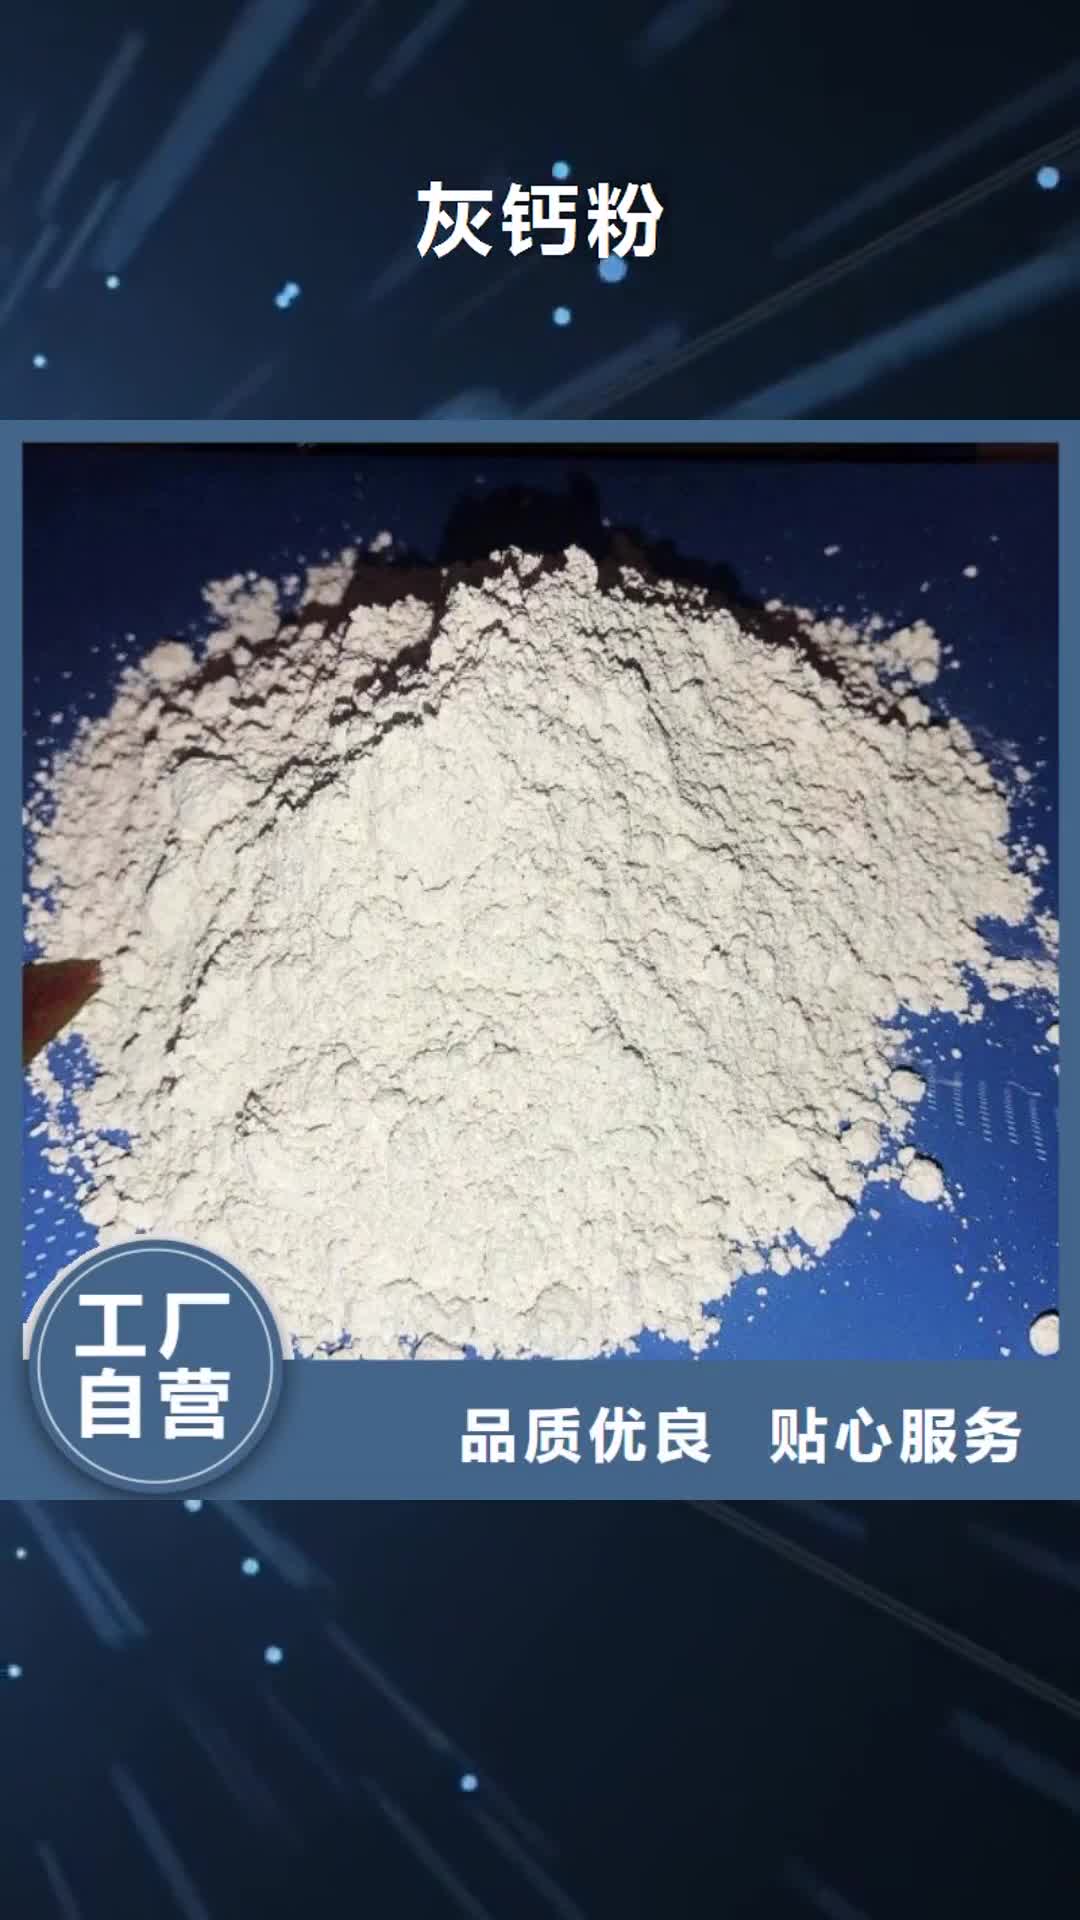 乌鲁木齐 灰钙粉,【白灰粉 】专注生产制造多年